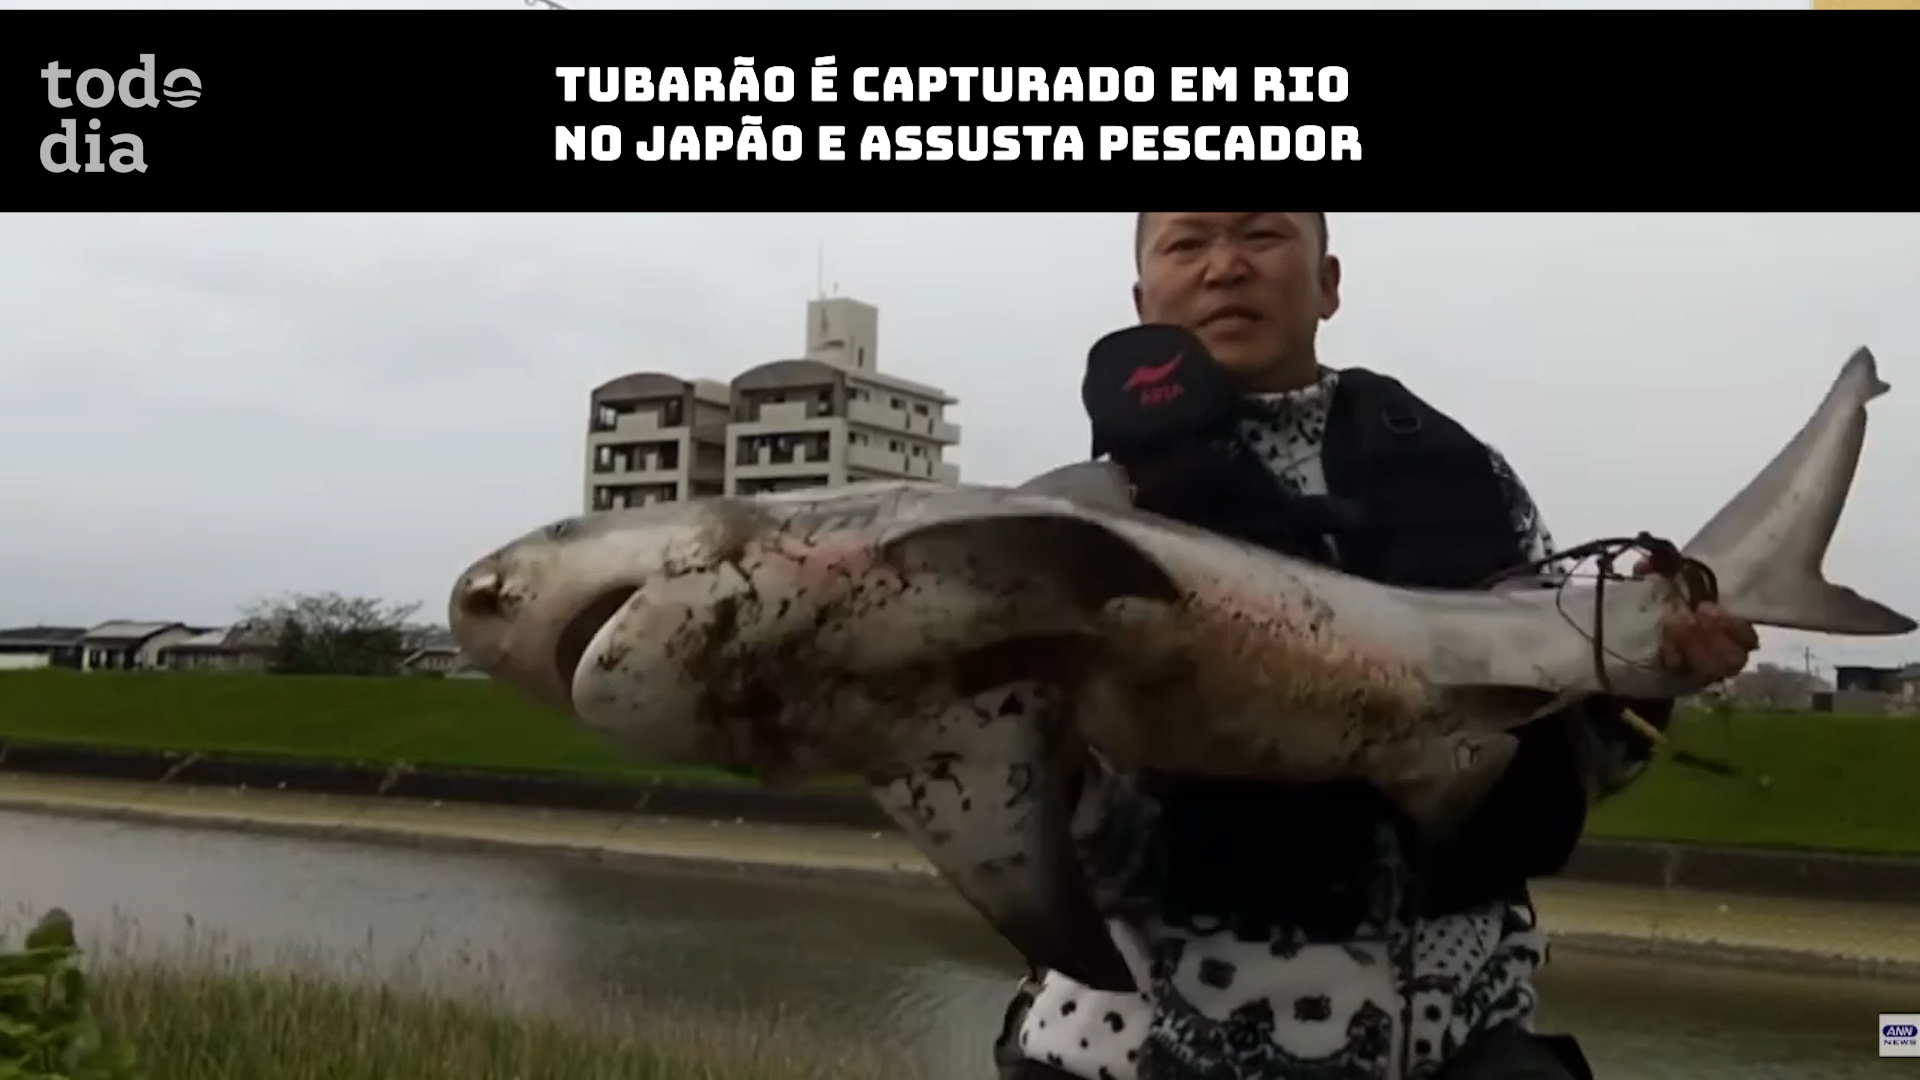 Tubarão é capturado em rio no Japão e assusta pescador 